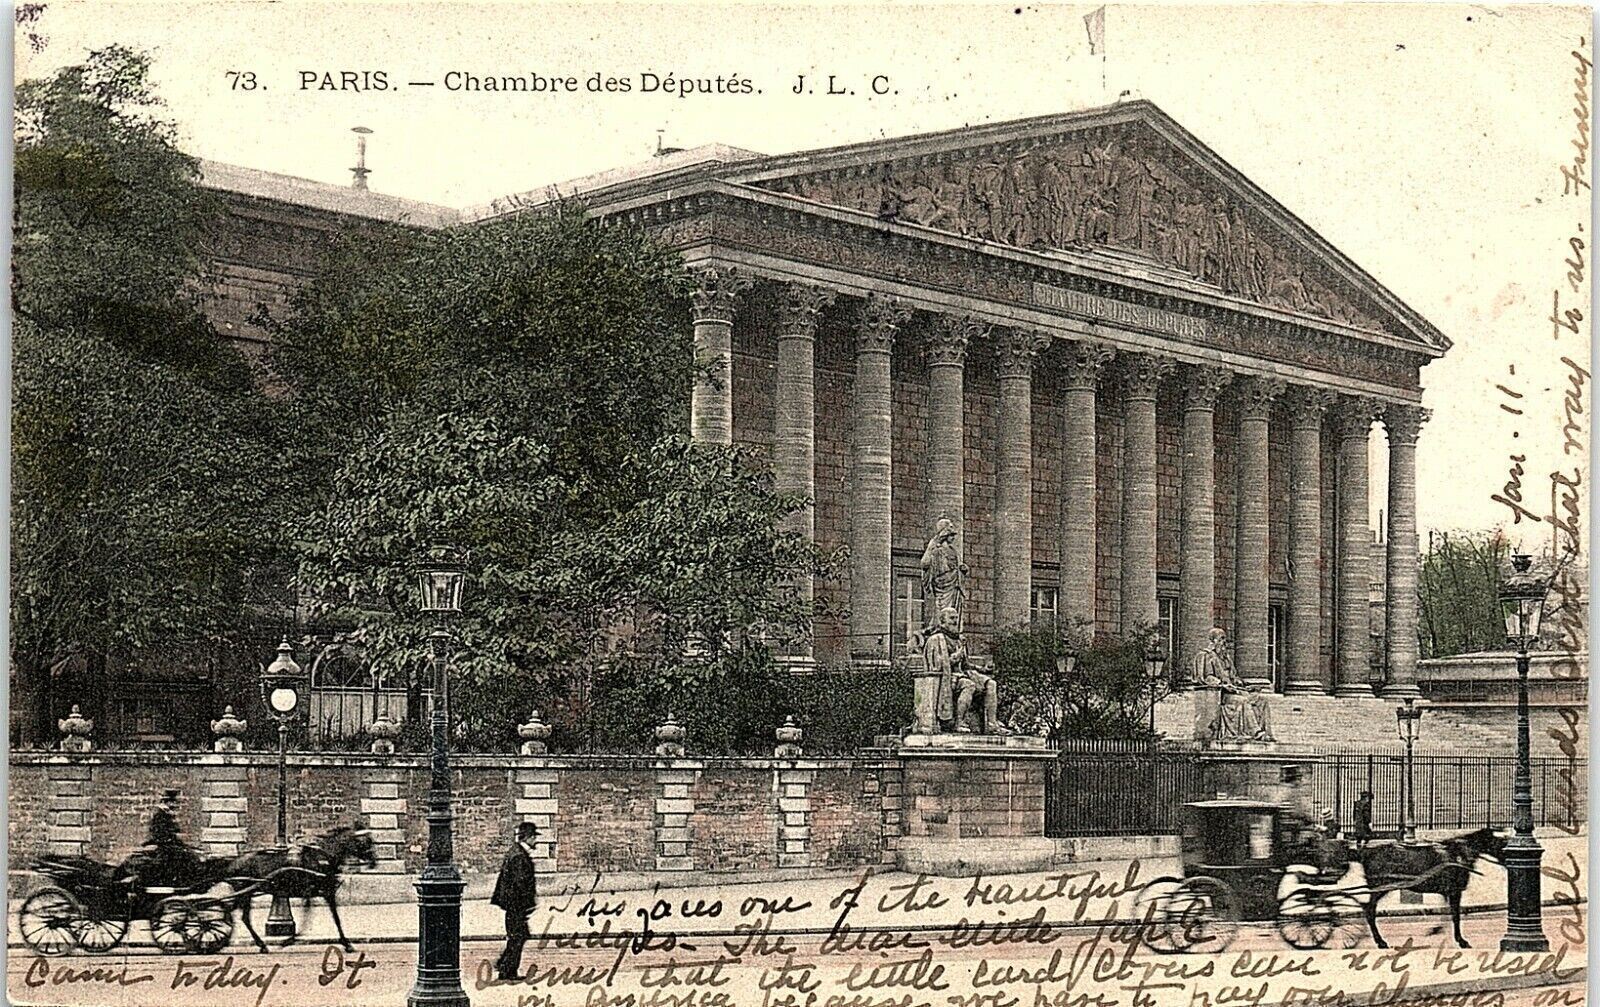 1907 Paris Chambre des Deputes J.L.C. Montparnasse Postcard 13-53